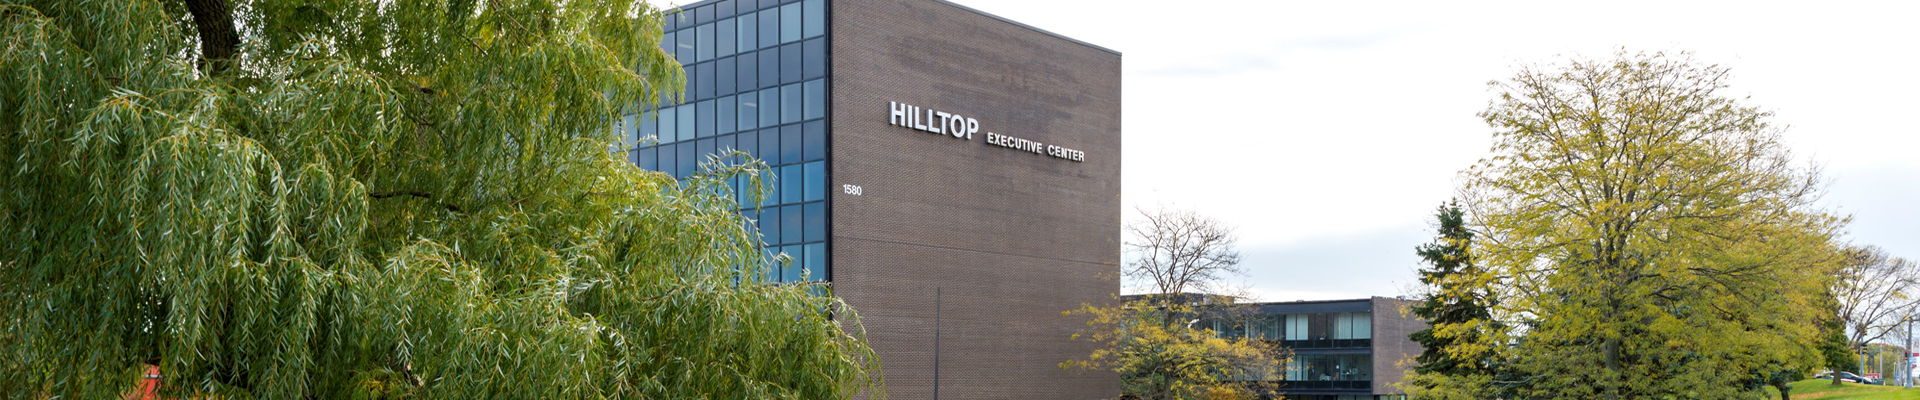 Exterior of the Hilltop executive Center